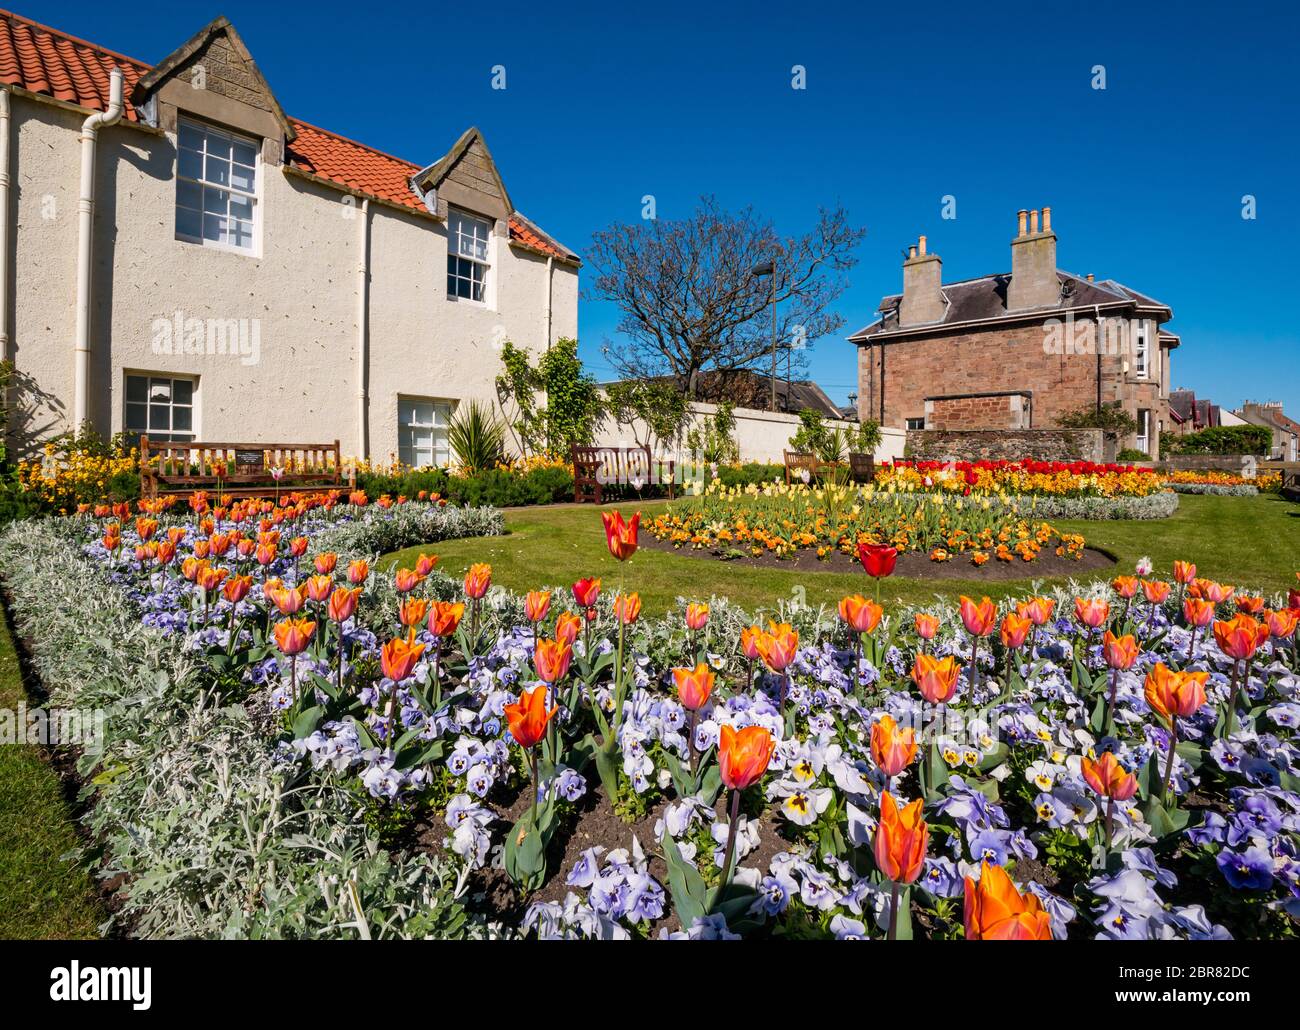 Coloré printemps fleurs dans le jardin de guerre mémorial avec des bancs vides pendant le confinement de la pandémie Covid, North Berwick, East Lothian, Écosse, Royaume-Uni Banque D'Images